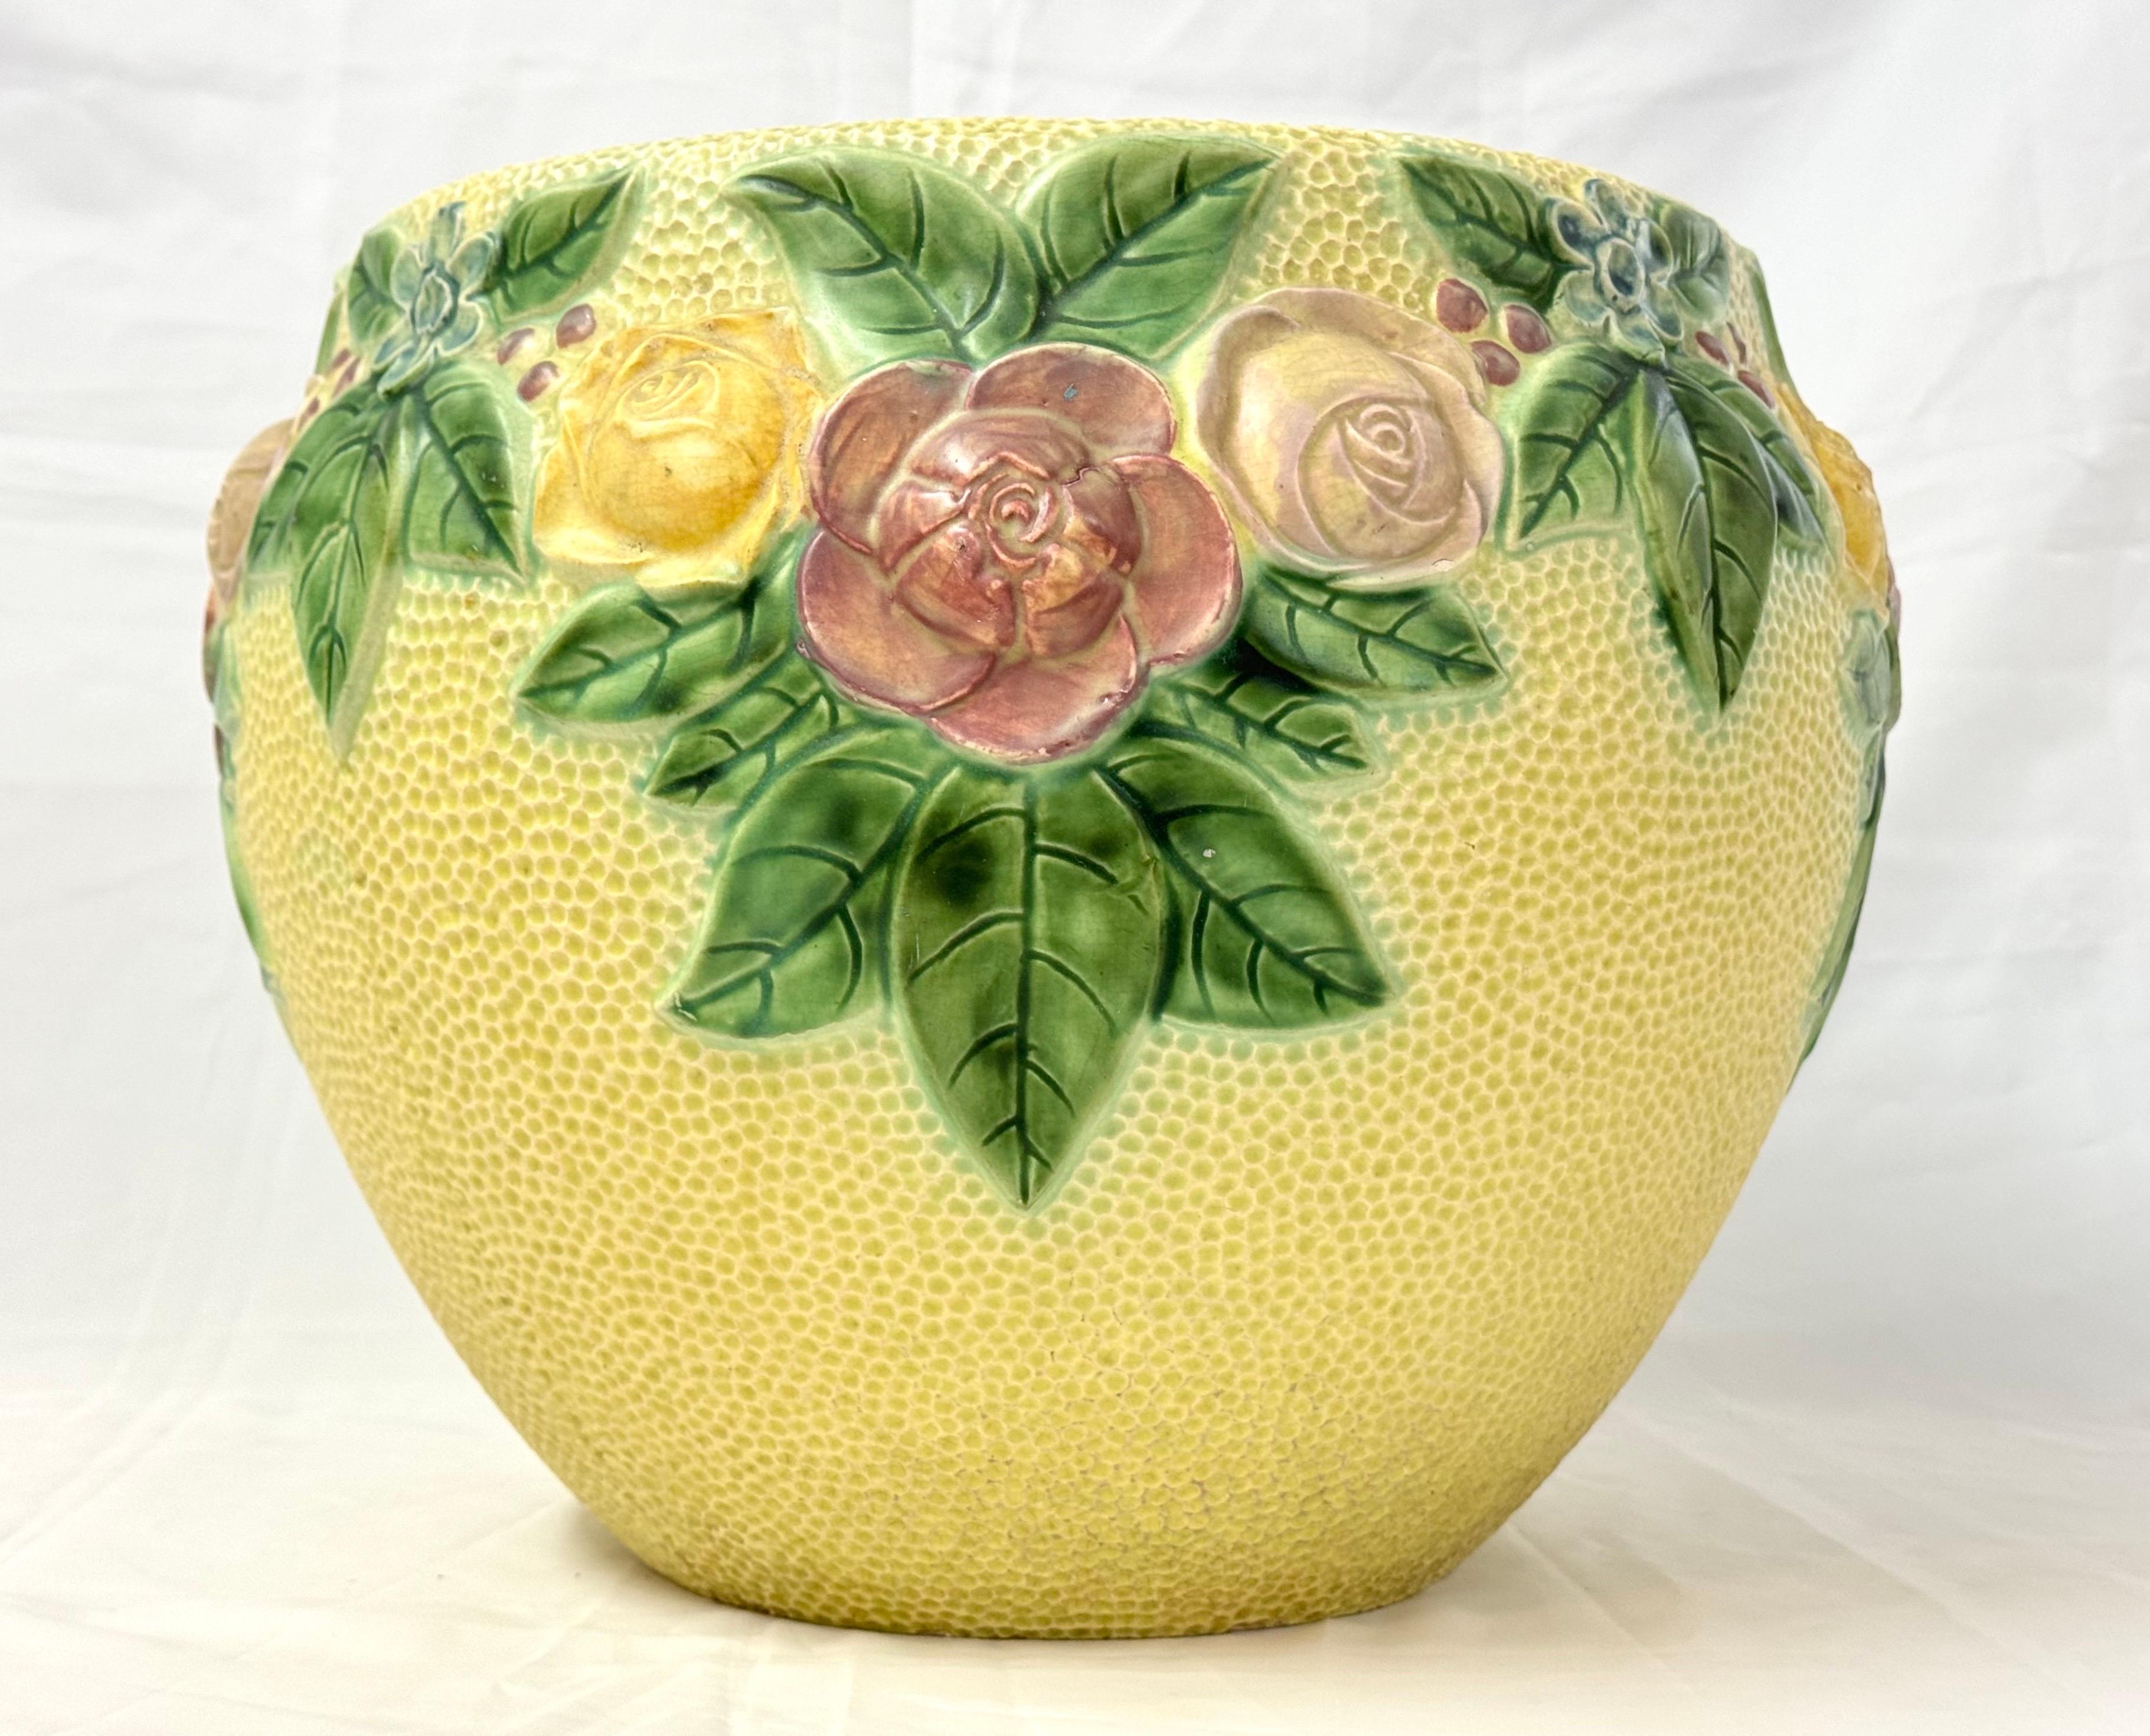 Große Roseville Rozane Floral Keramik Jardiniere. Wunderschöne Gelb- und Grüntöne machen diese romantische Jardiniere aus. Großes Format, um eine prächtige große Pflanze zu halten.  
Im Jahr 1900 stellte Young Ross C. Purdy ein, um die erste